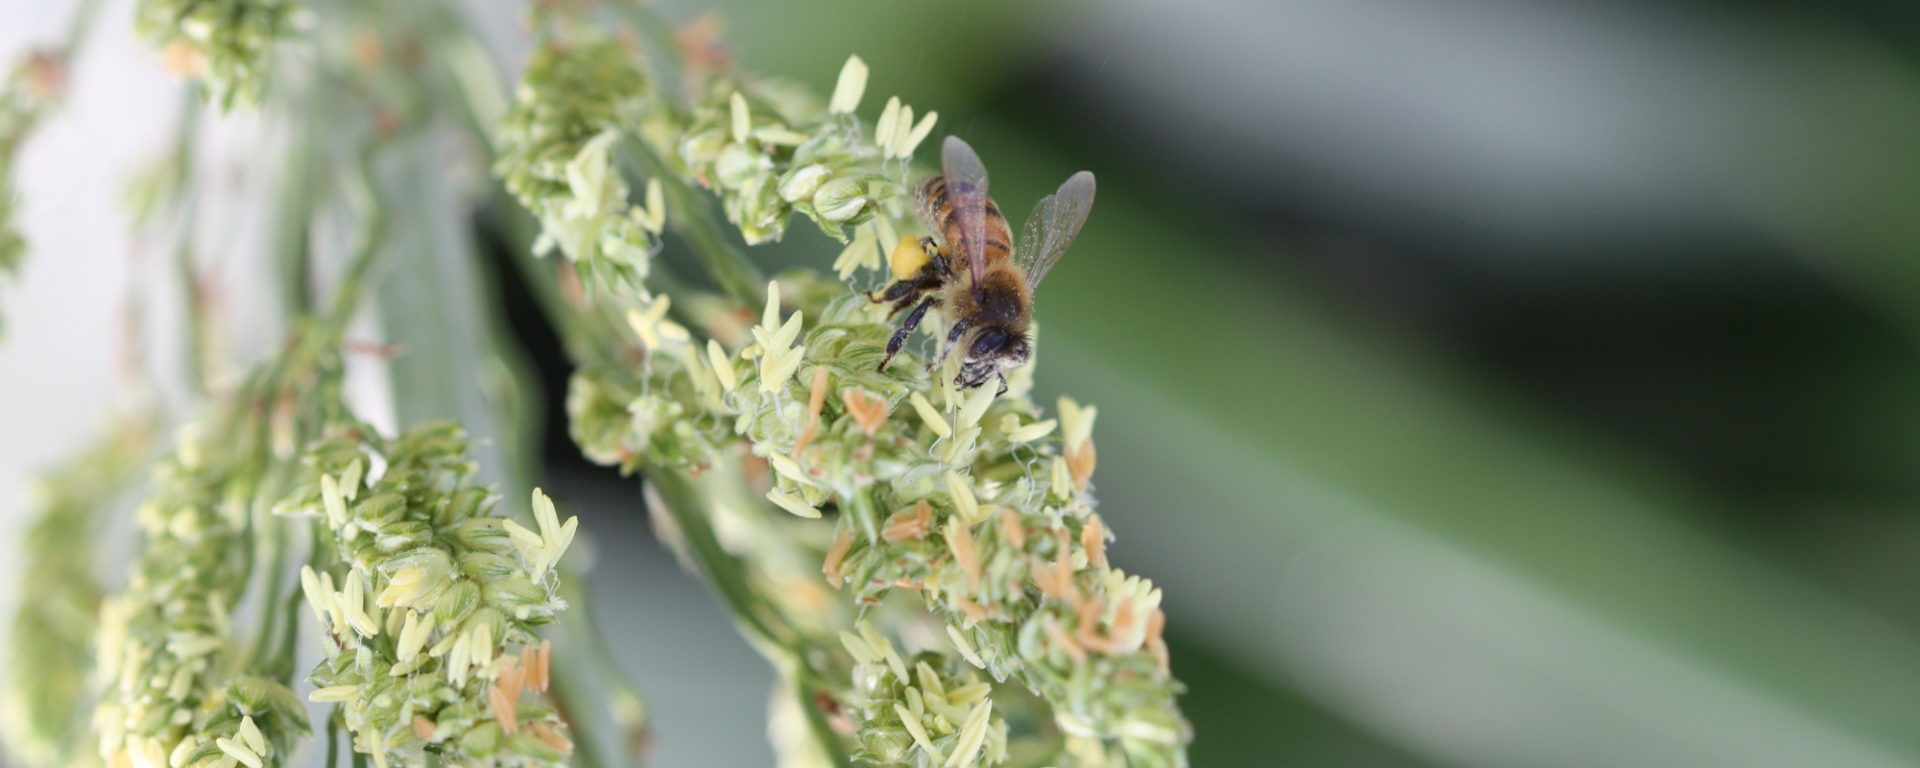 close-up of a honeybee